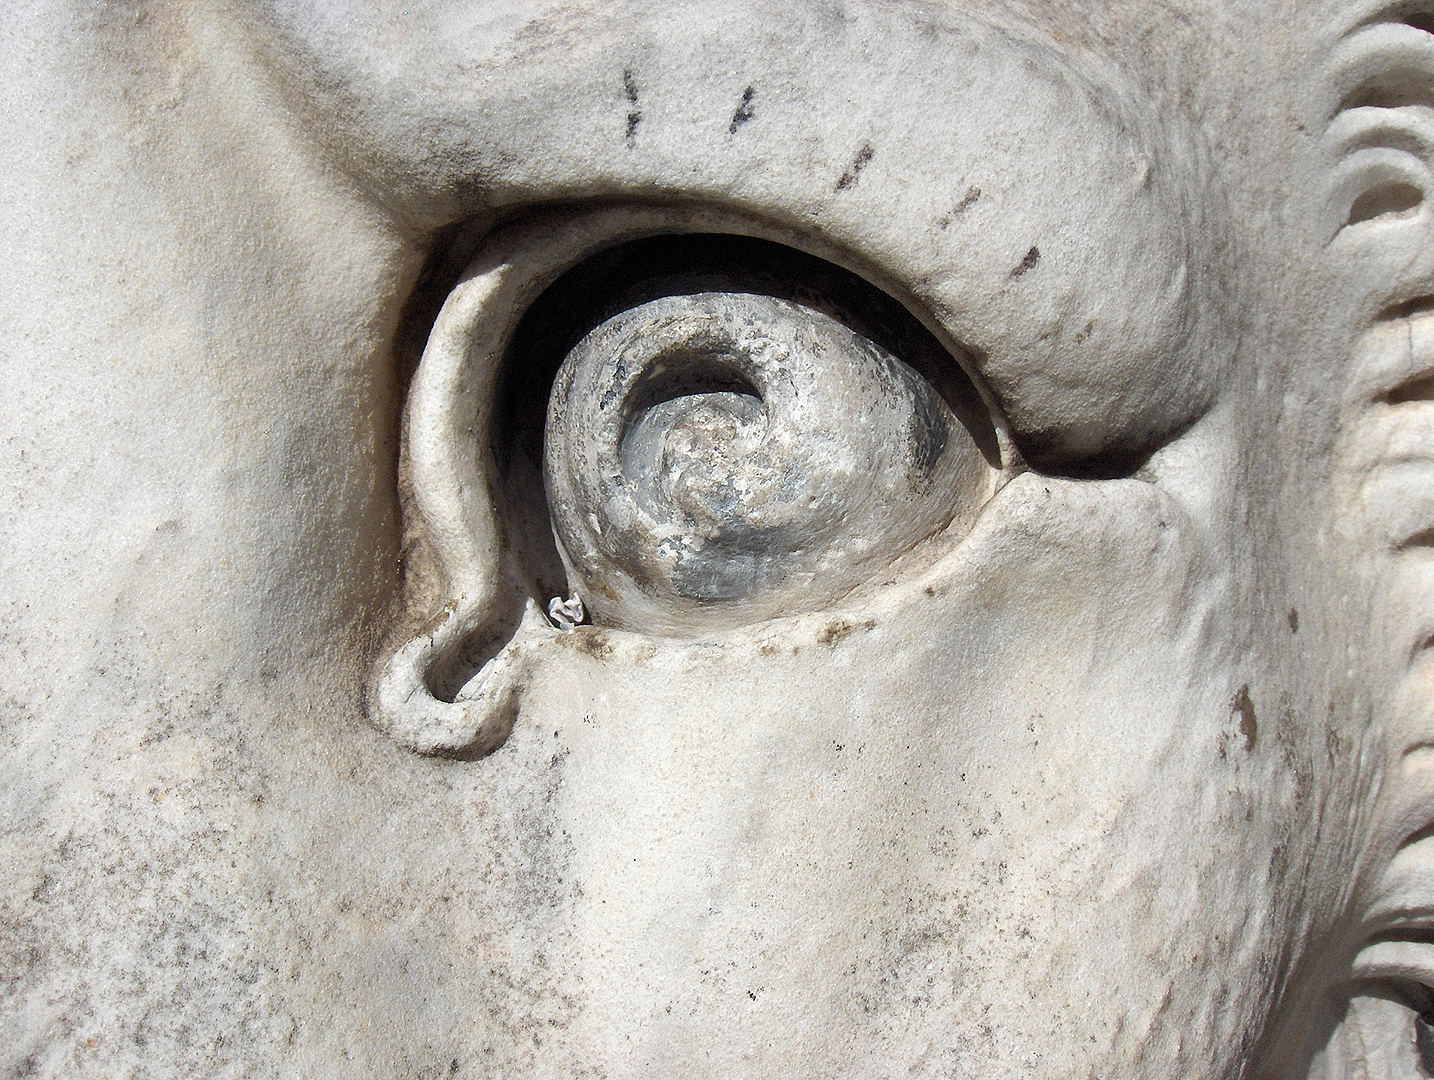 Oog van een gebeeldhouwde leeuw, The eye of a sculptured lion